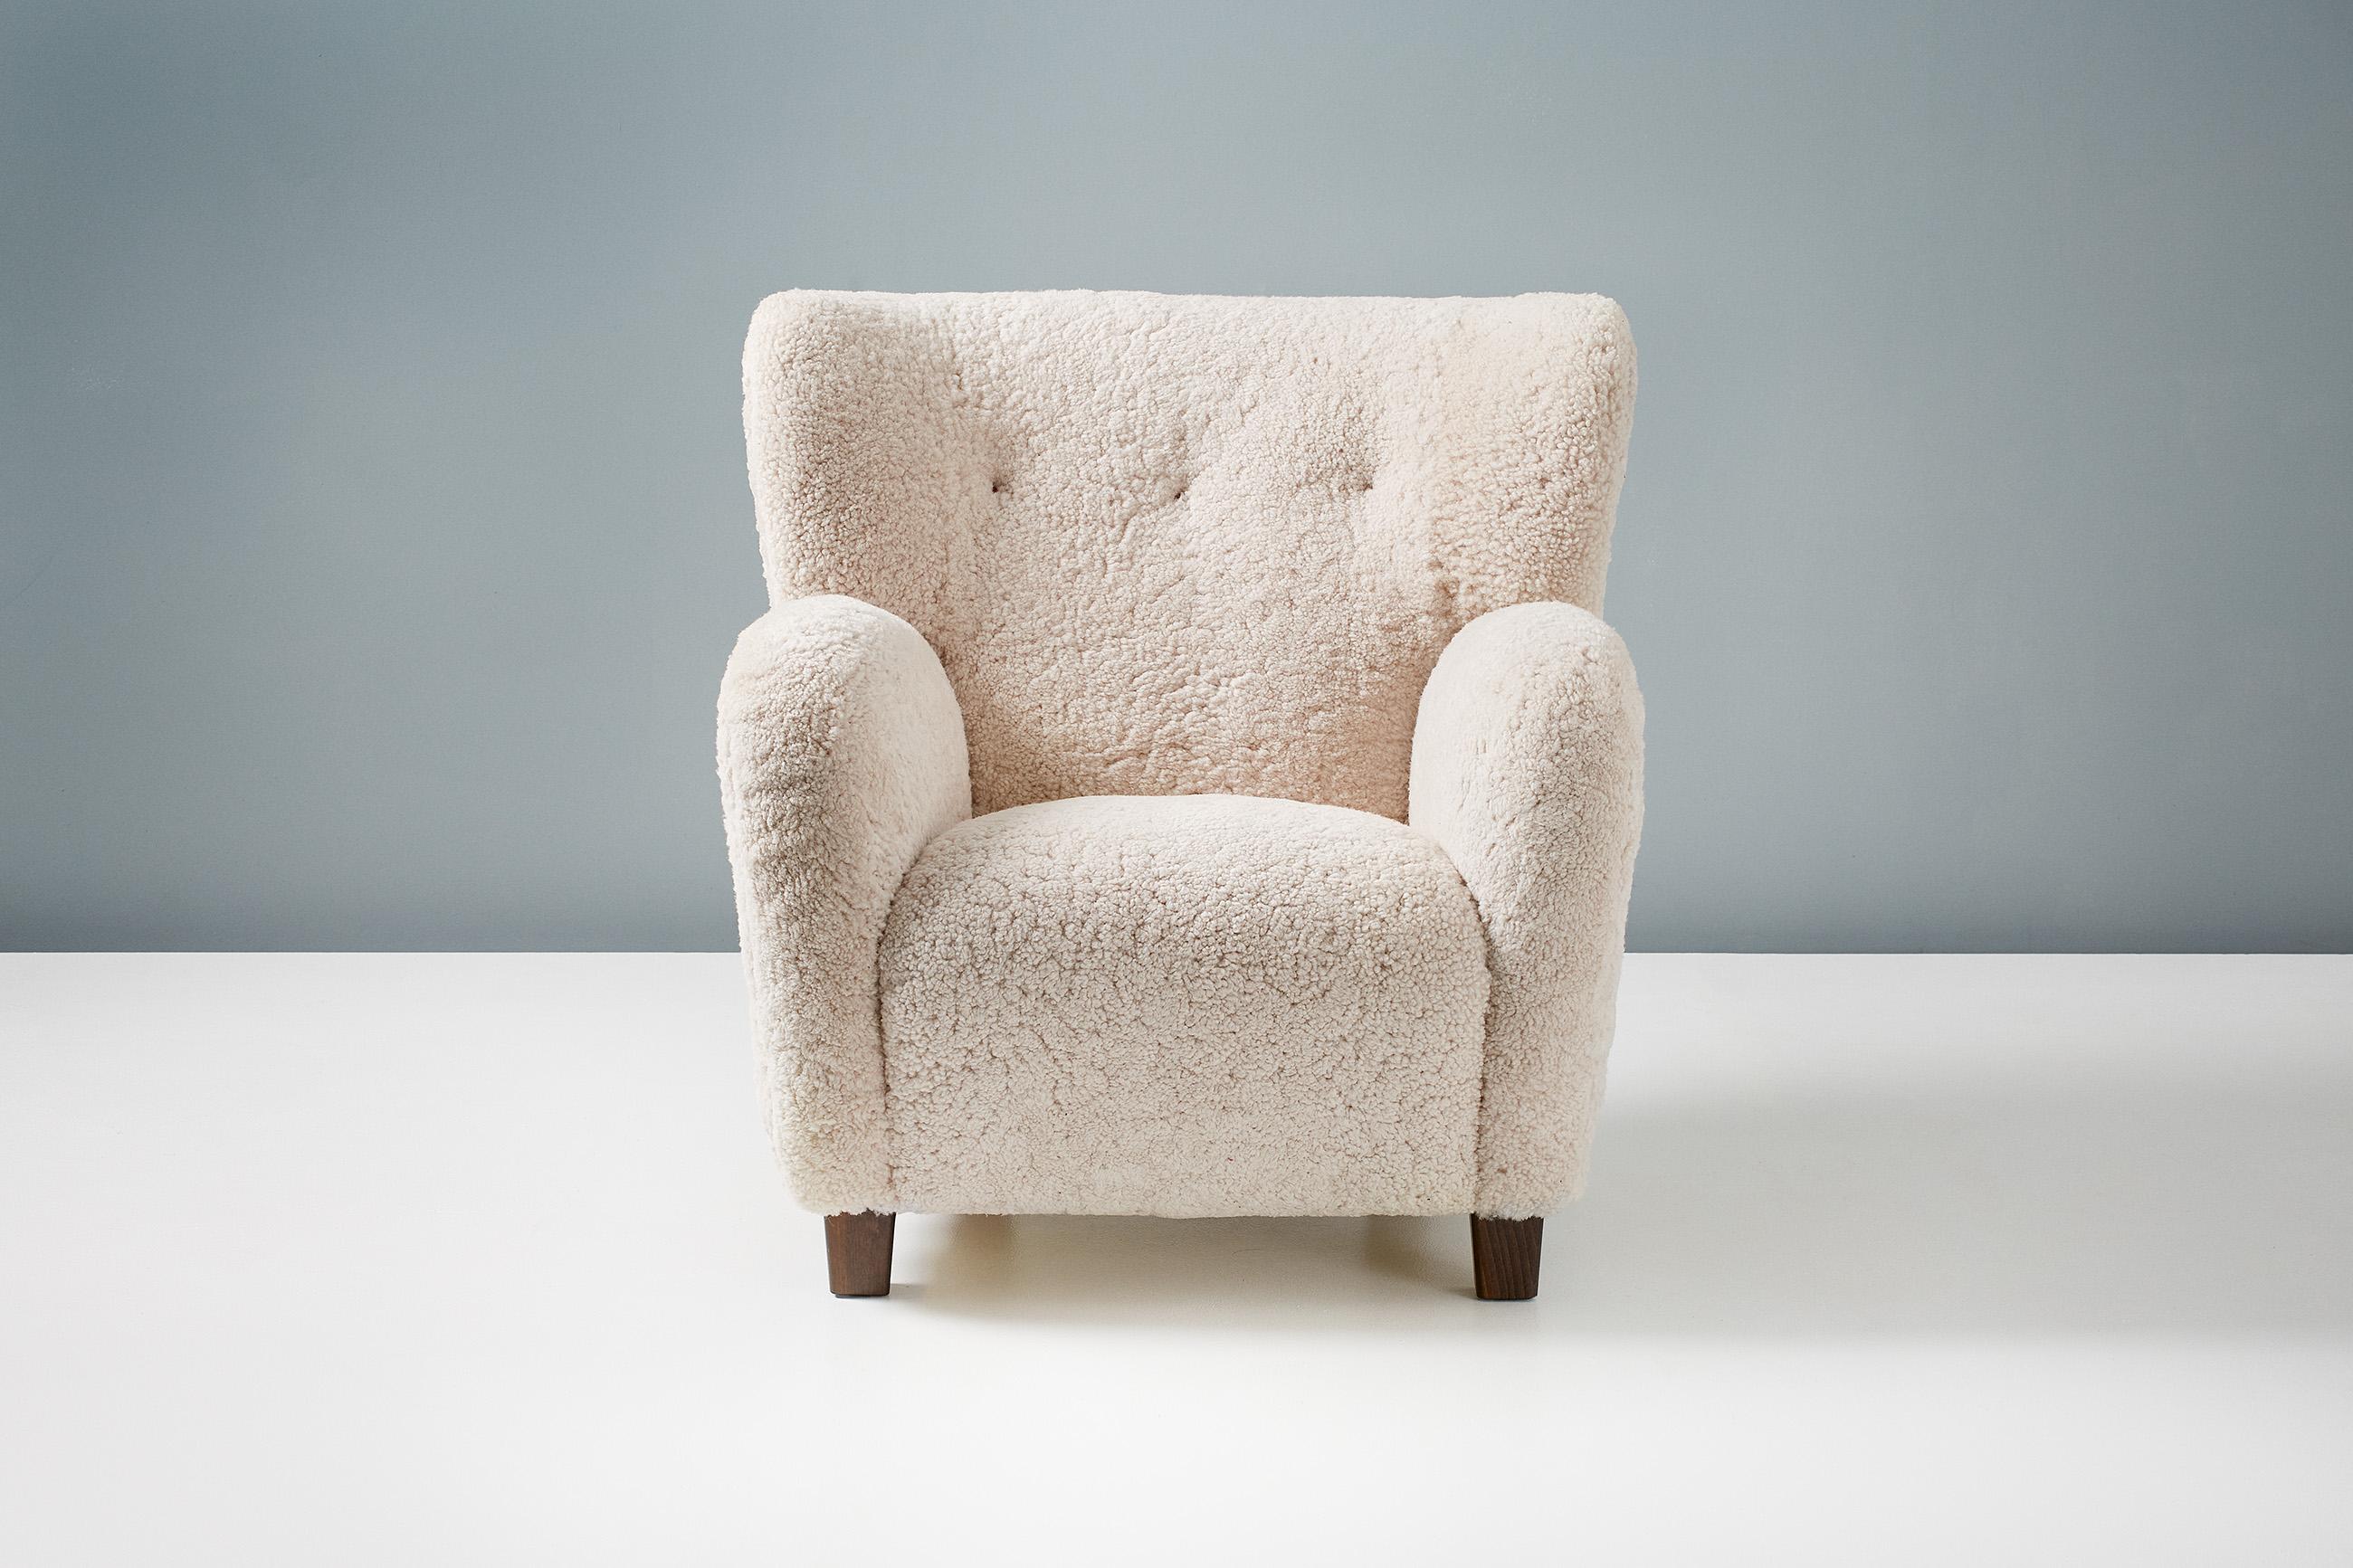 Reproduction d'un fauteuil dans le style moderne danois des années 1940.

Ces pièces haut de gamme et personnalisées sont fabriquées à la main dans nos ateliers en Angleterre. Les pieds de la chaise sont disponibles en chêne huilé, en chêne fumigé